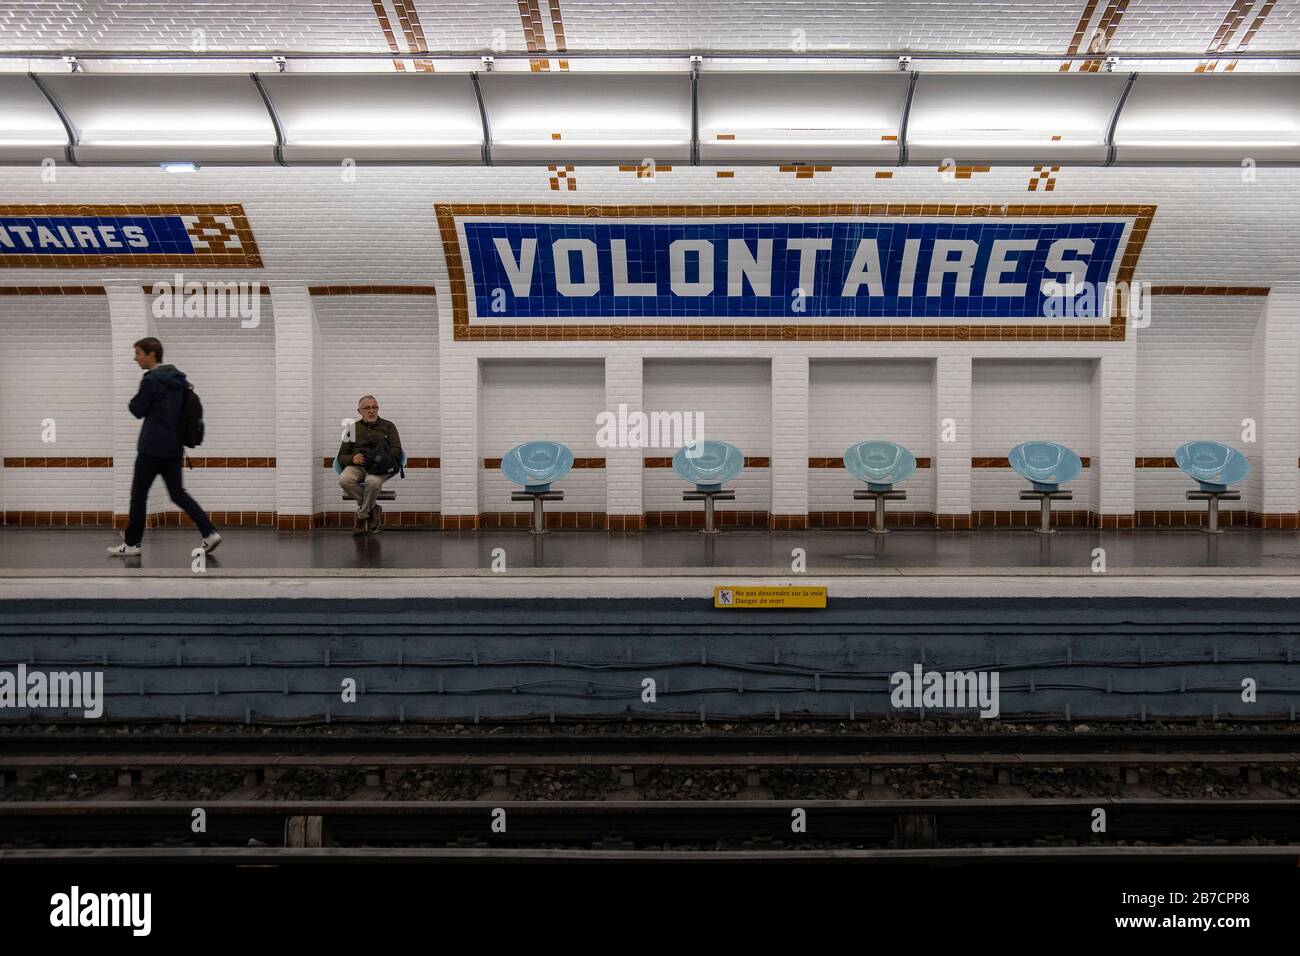 Les gens qui attendent le métro arrivent à la station de métro Volontaires à Paris, France, Europe Banque D'Images